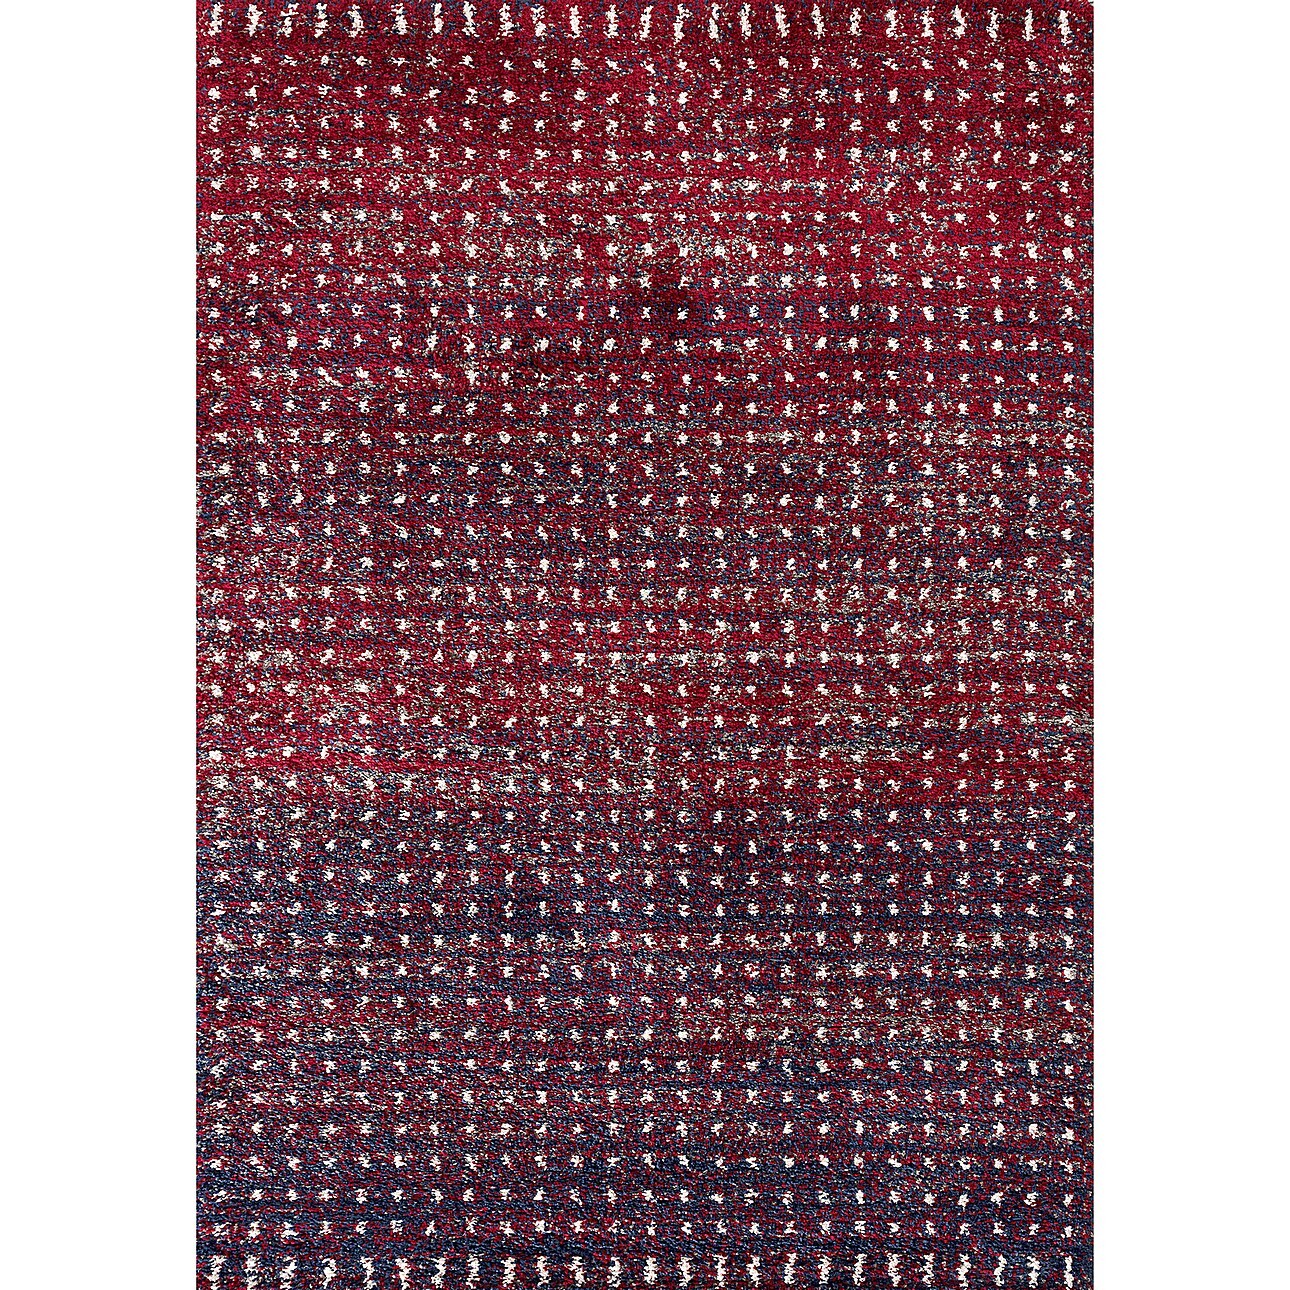 Teppich Royal cherry red/navy 160x230cm, 160 x 230 cm günstig online kaufen